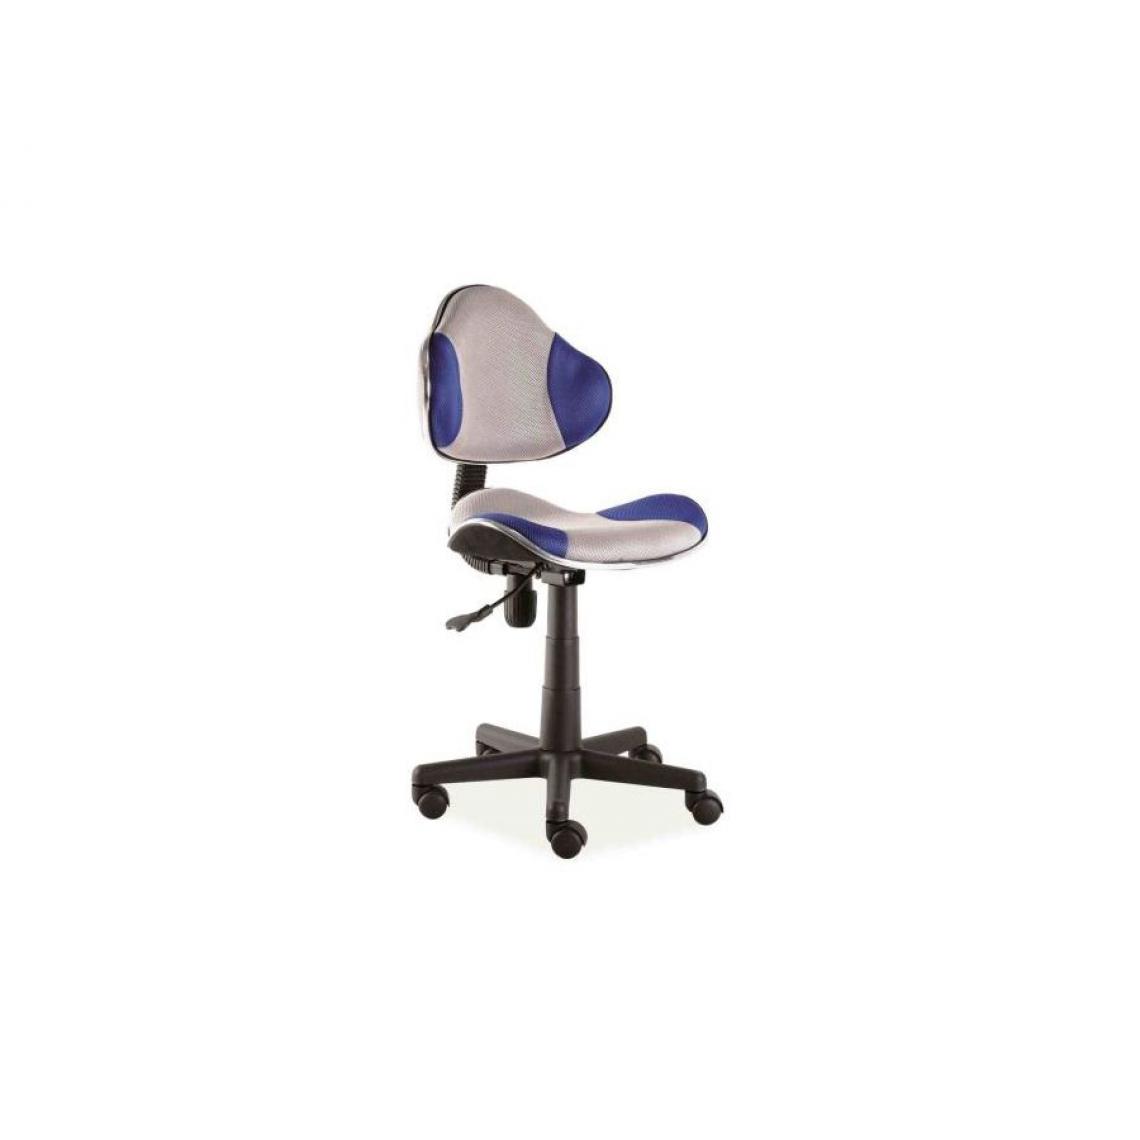 Hucoco - ABBEY | Chaise pivotante pour enfants | Hauteur réglable 80-92cm | Tissu haute qualité | Chaise de bureau à roulettes - Bleu - Chaises